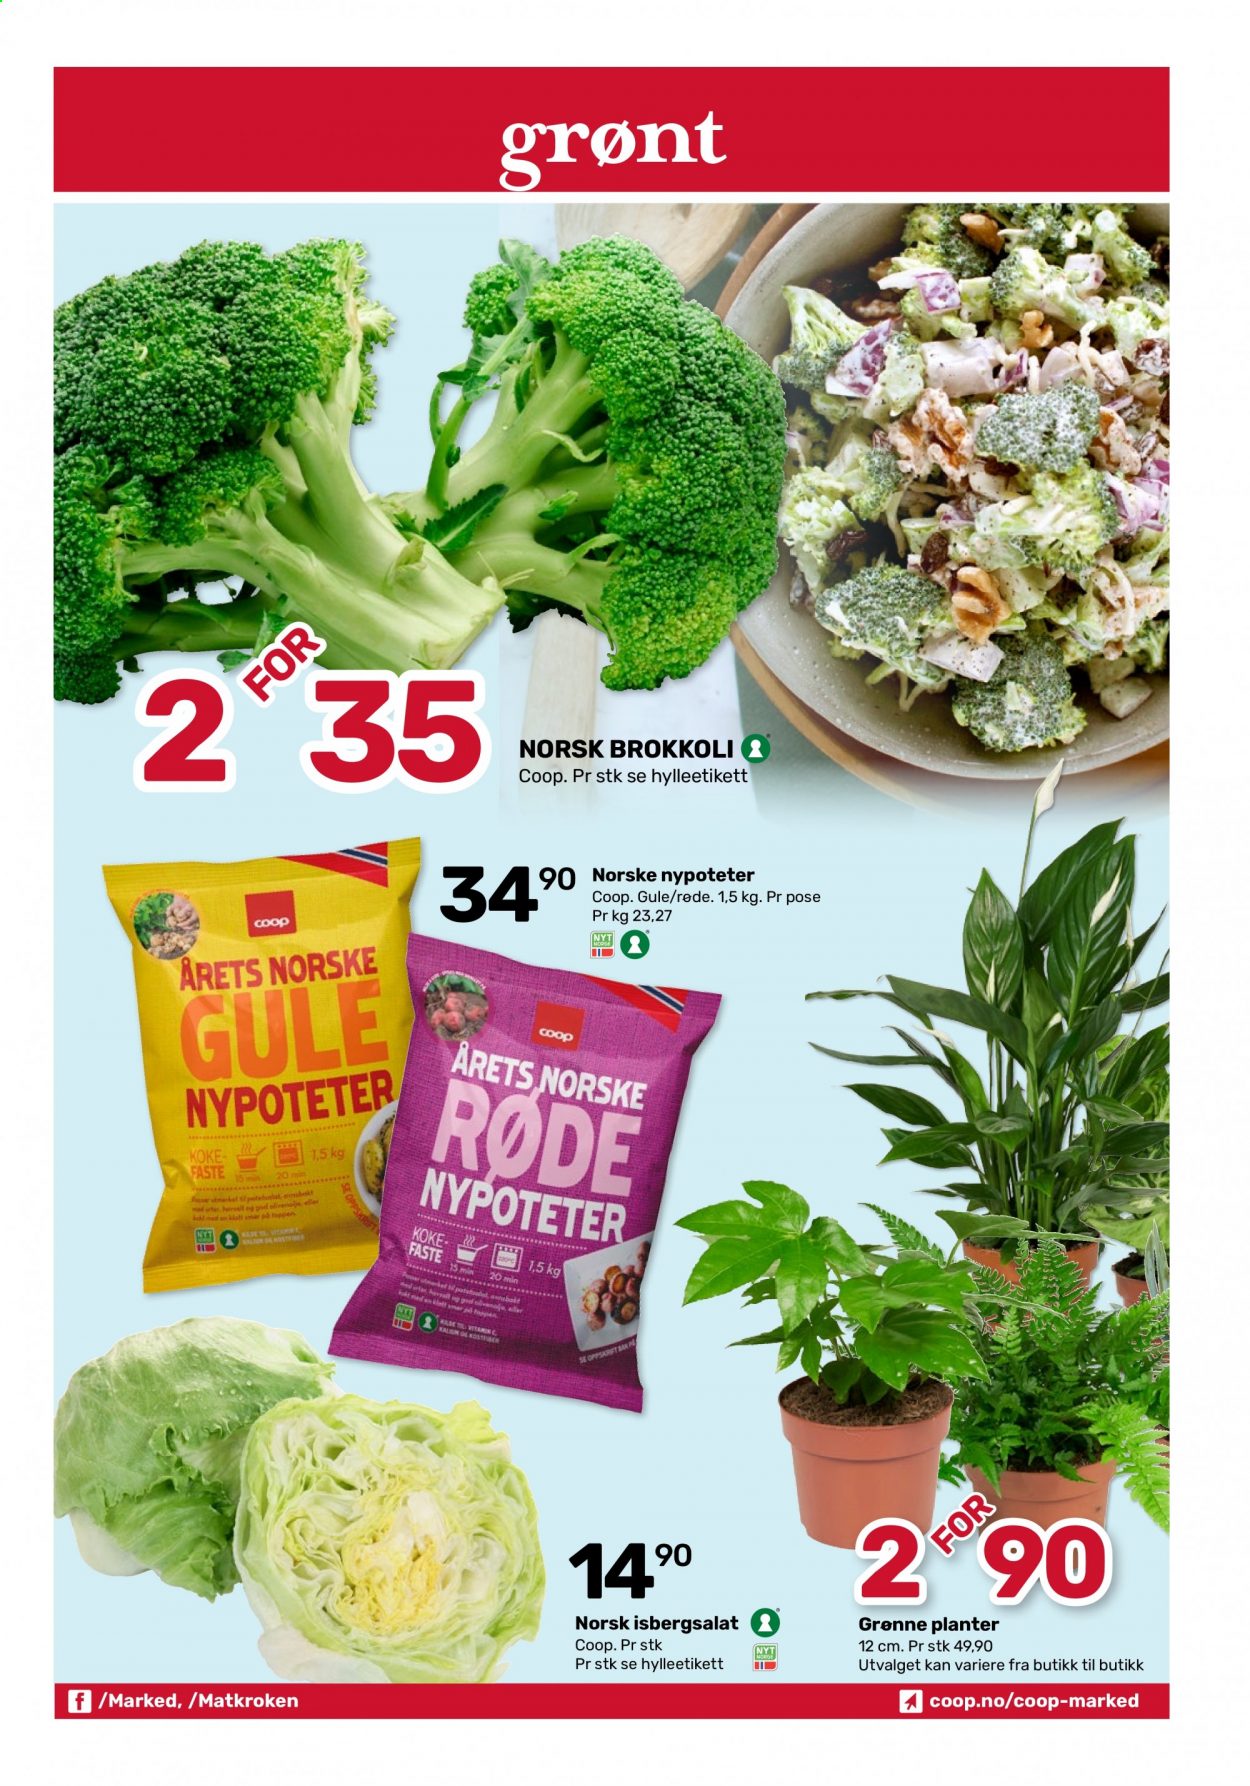 thumbnail - Kundeavis Coop Marked - 26.7.2021 - 7.8.2021 - Produkter fra tilbudsaviser - brokkoli, isbergsalat, potetsalat. Side 3.